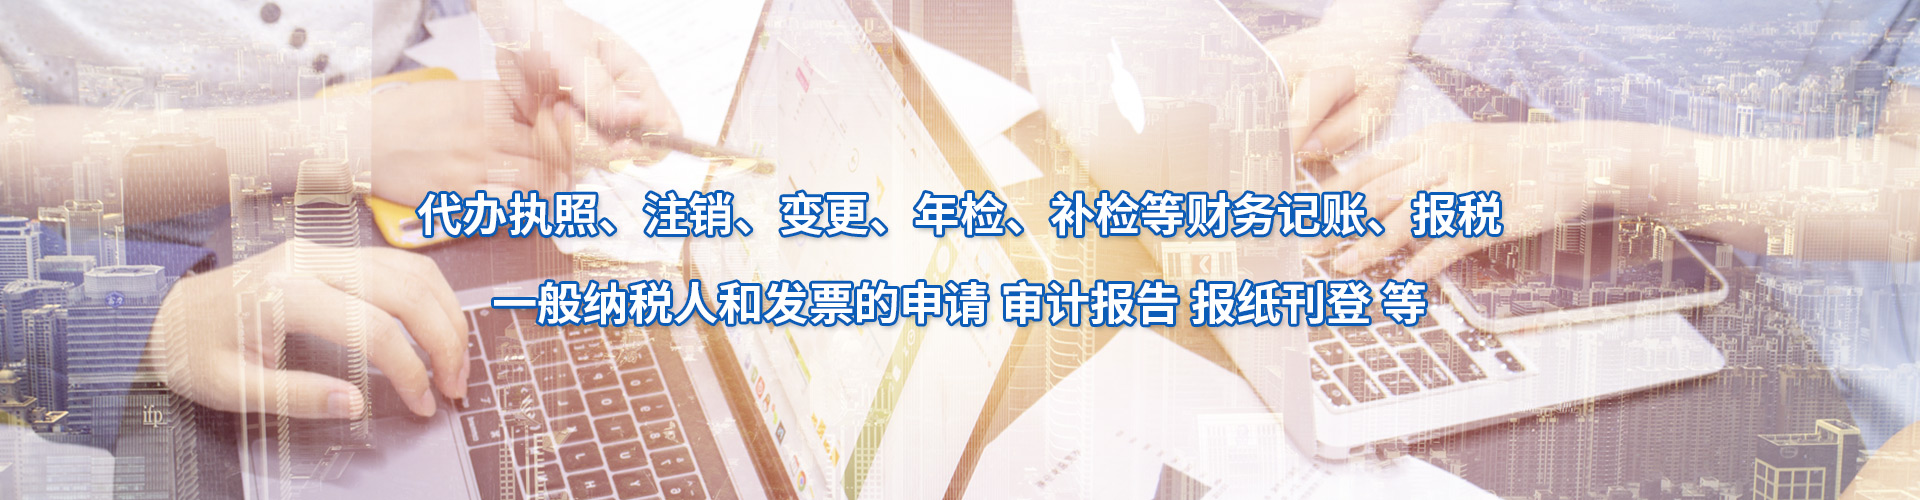 北京公司注册申请流程 团队服务